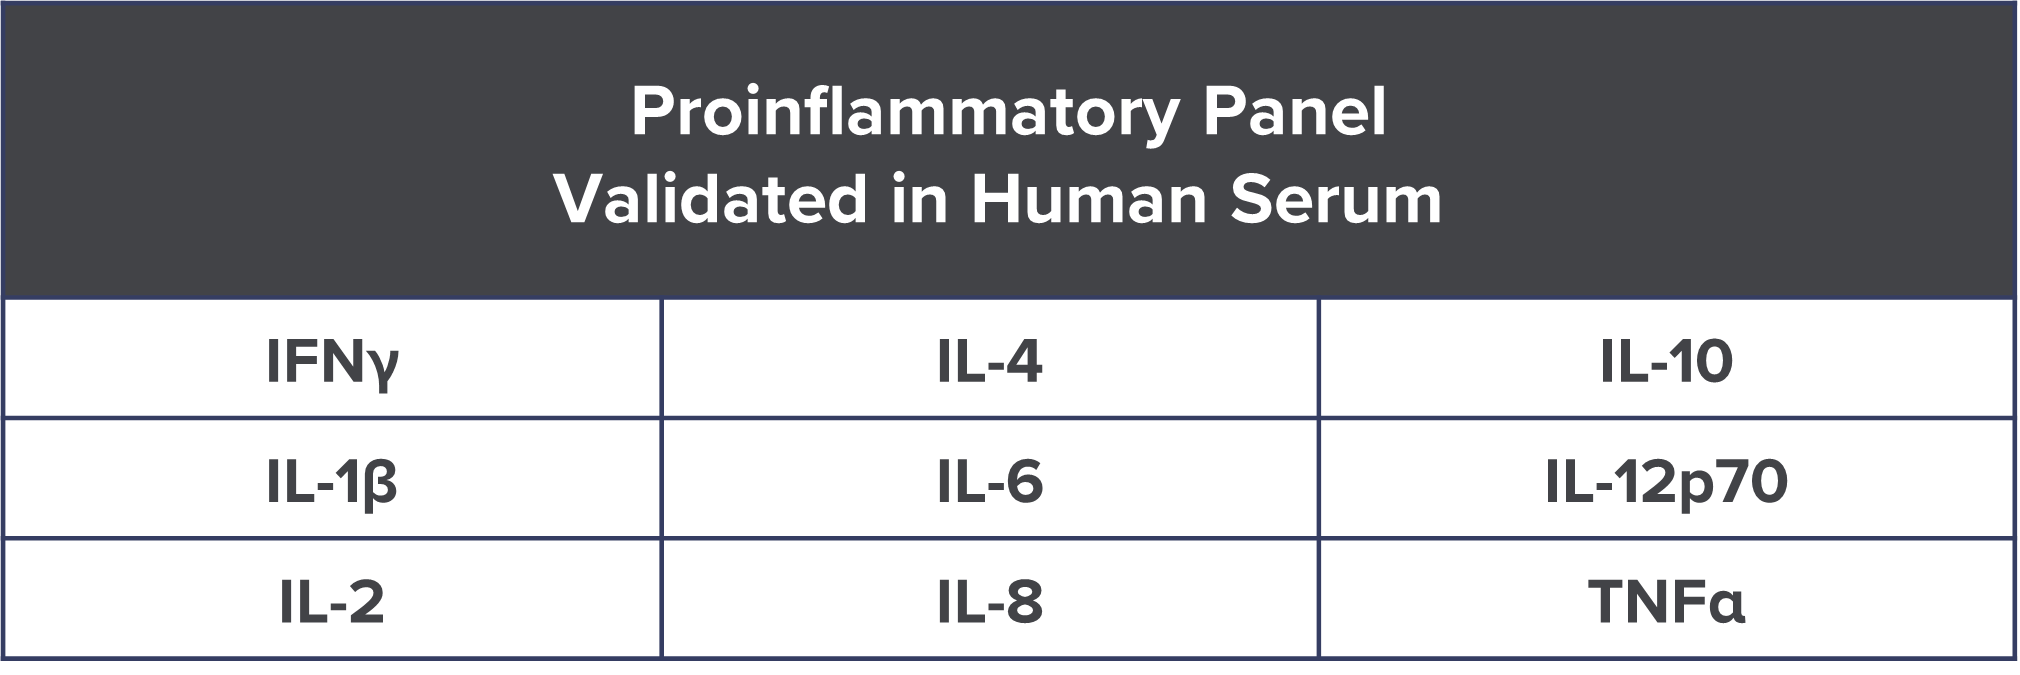 Proinflammatory Panel